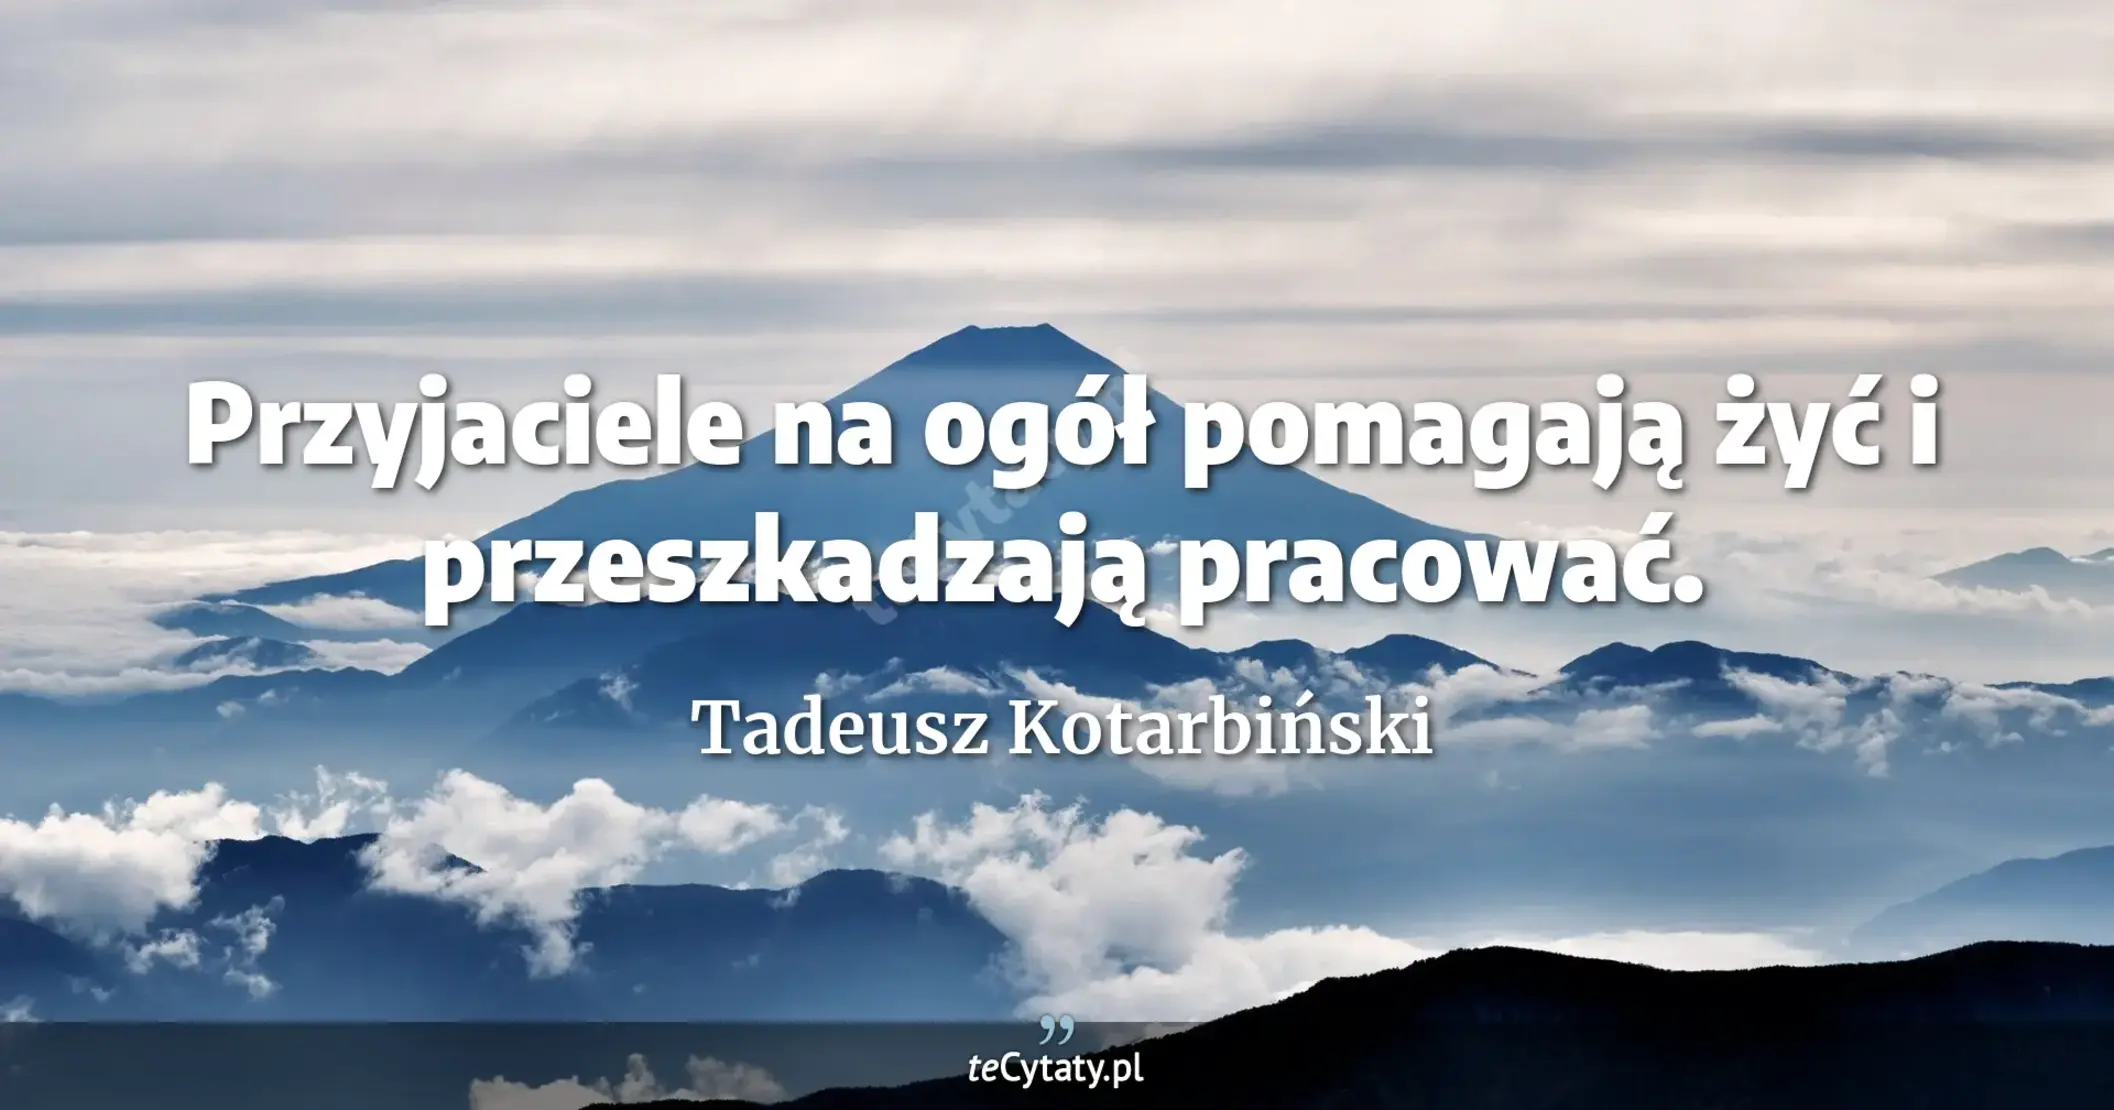 Przyjaciele na ogół pomagają żyć i przeszkadzają pracować. - Tadeusz Kotarbiński